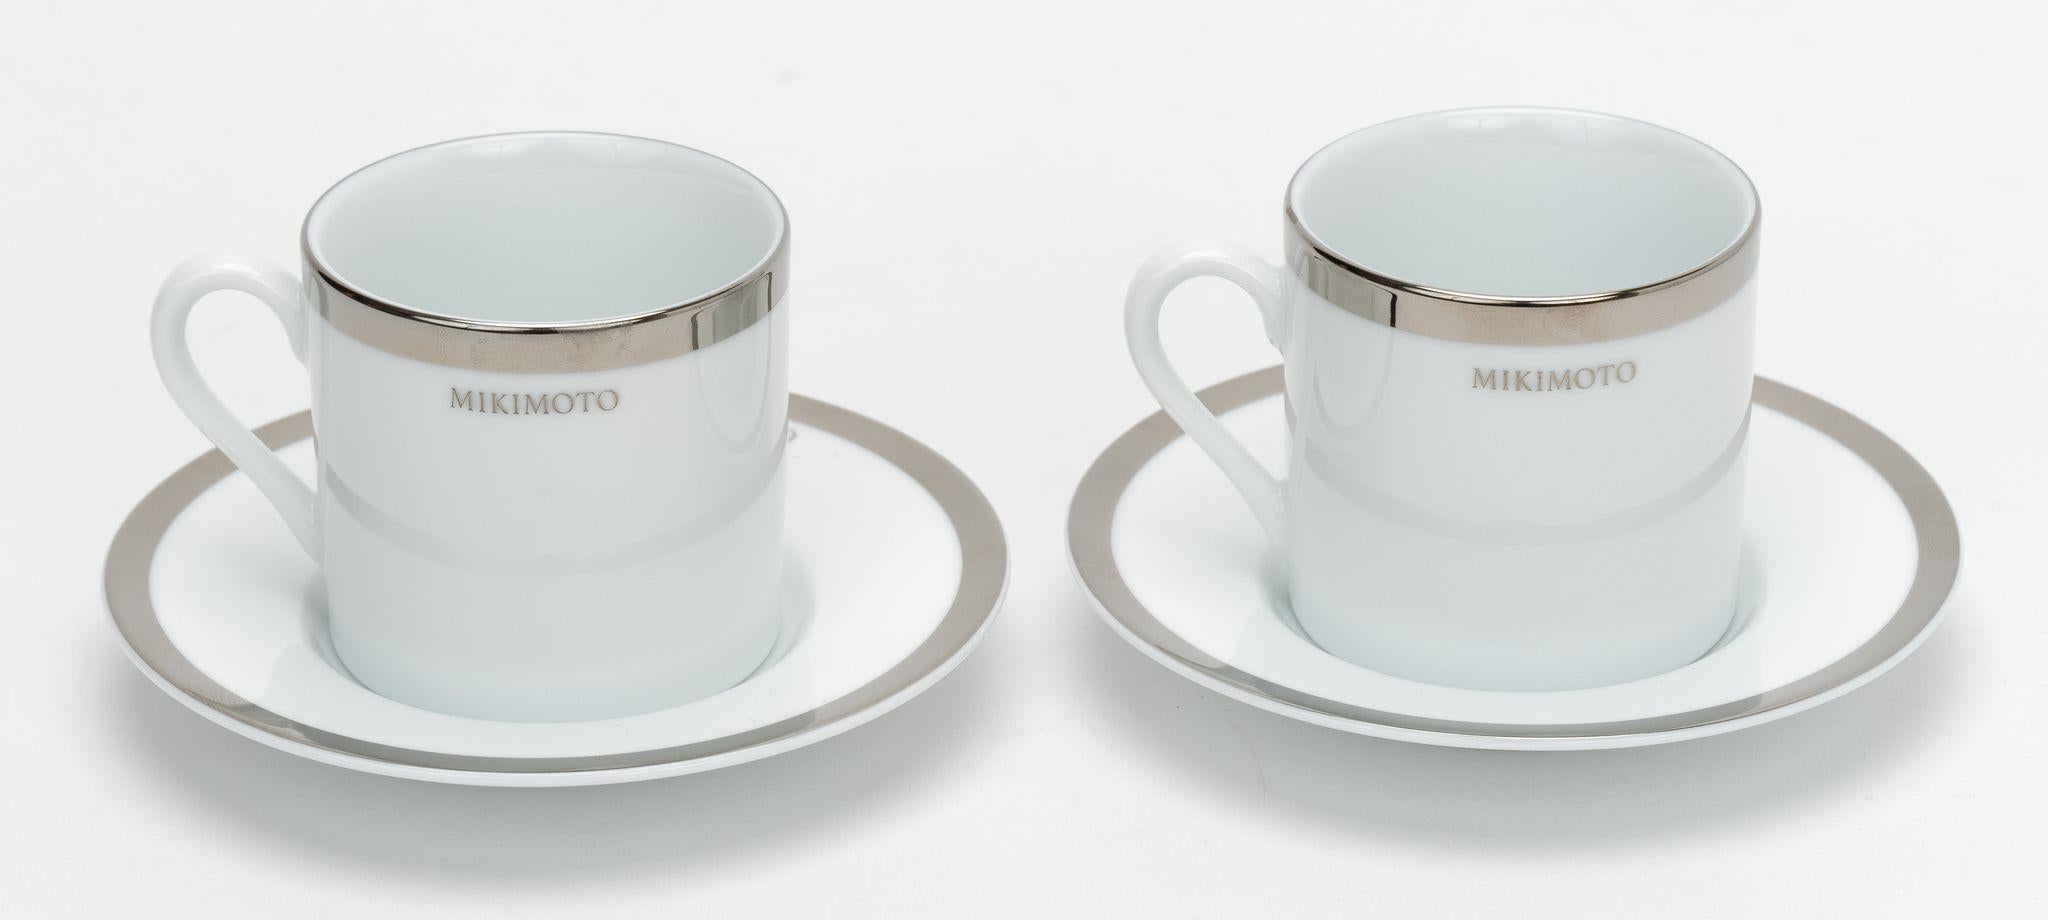 Mikimoto White und Platinum 2er-Set Kaffeekapseln und Untertassen. Ausgezeichneter Zustand.
Kommt mit Originalverpackung.